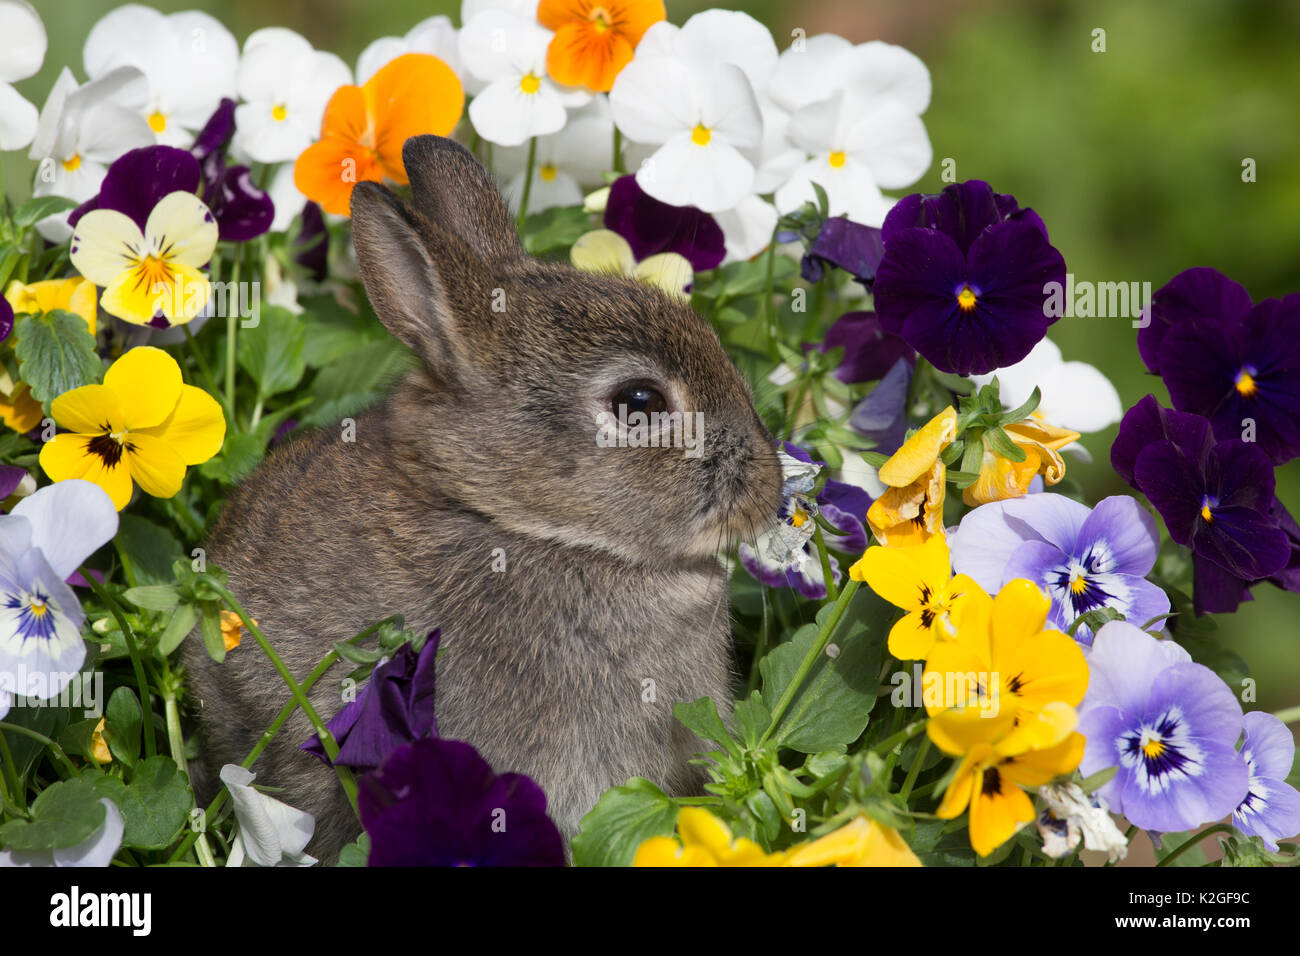 Baby Netherland Dwarf rabbit sitting amongst pansies, USA. Stock Photo